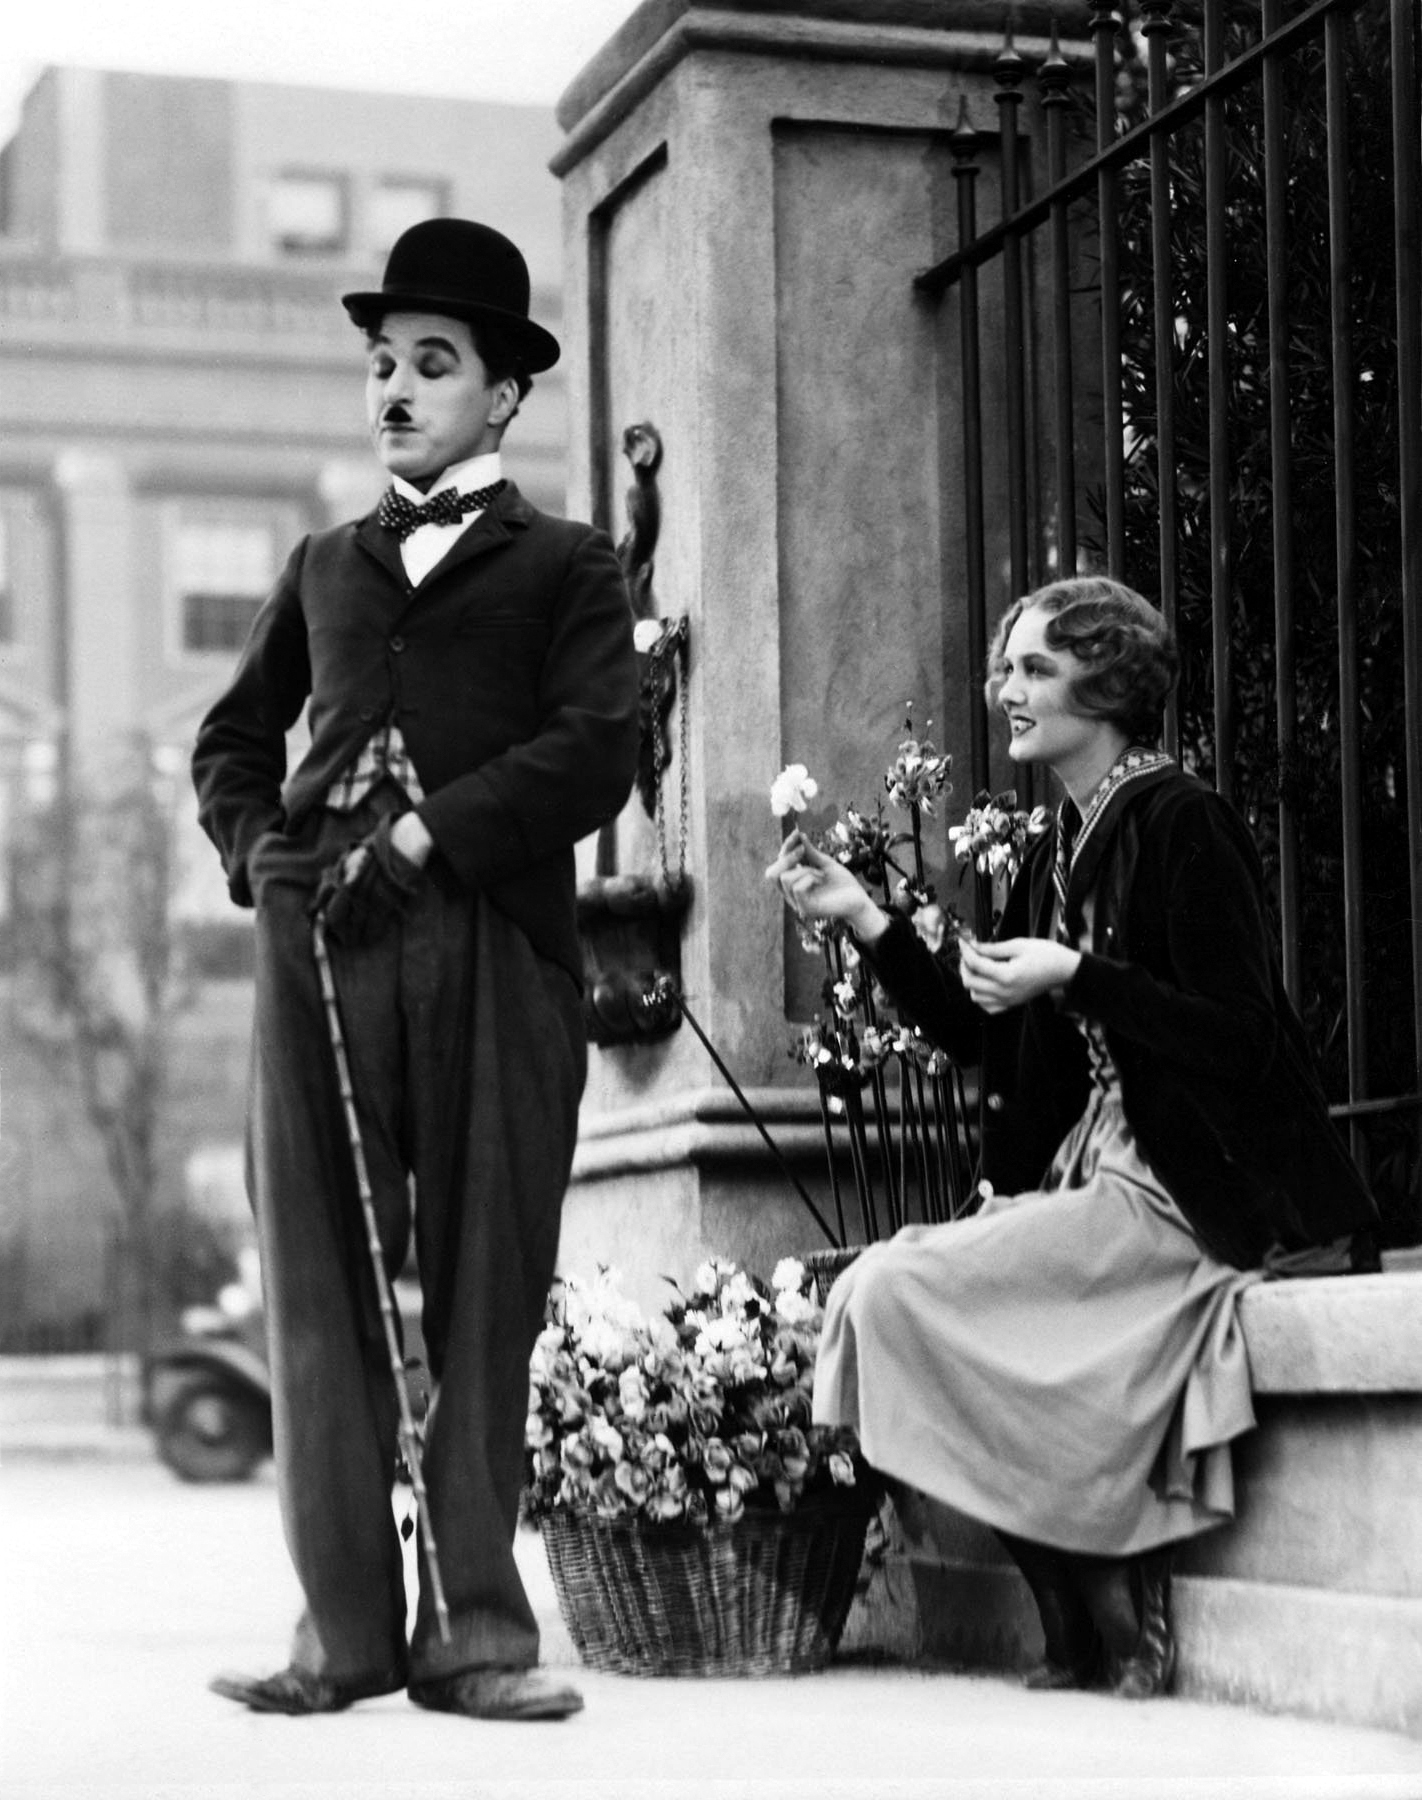 El primer encuentro del vagabundo y la violetera es uno de los más bellos momentos del cine de Chaplin